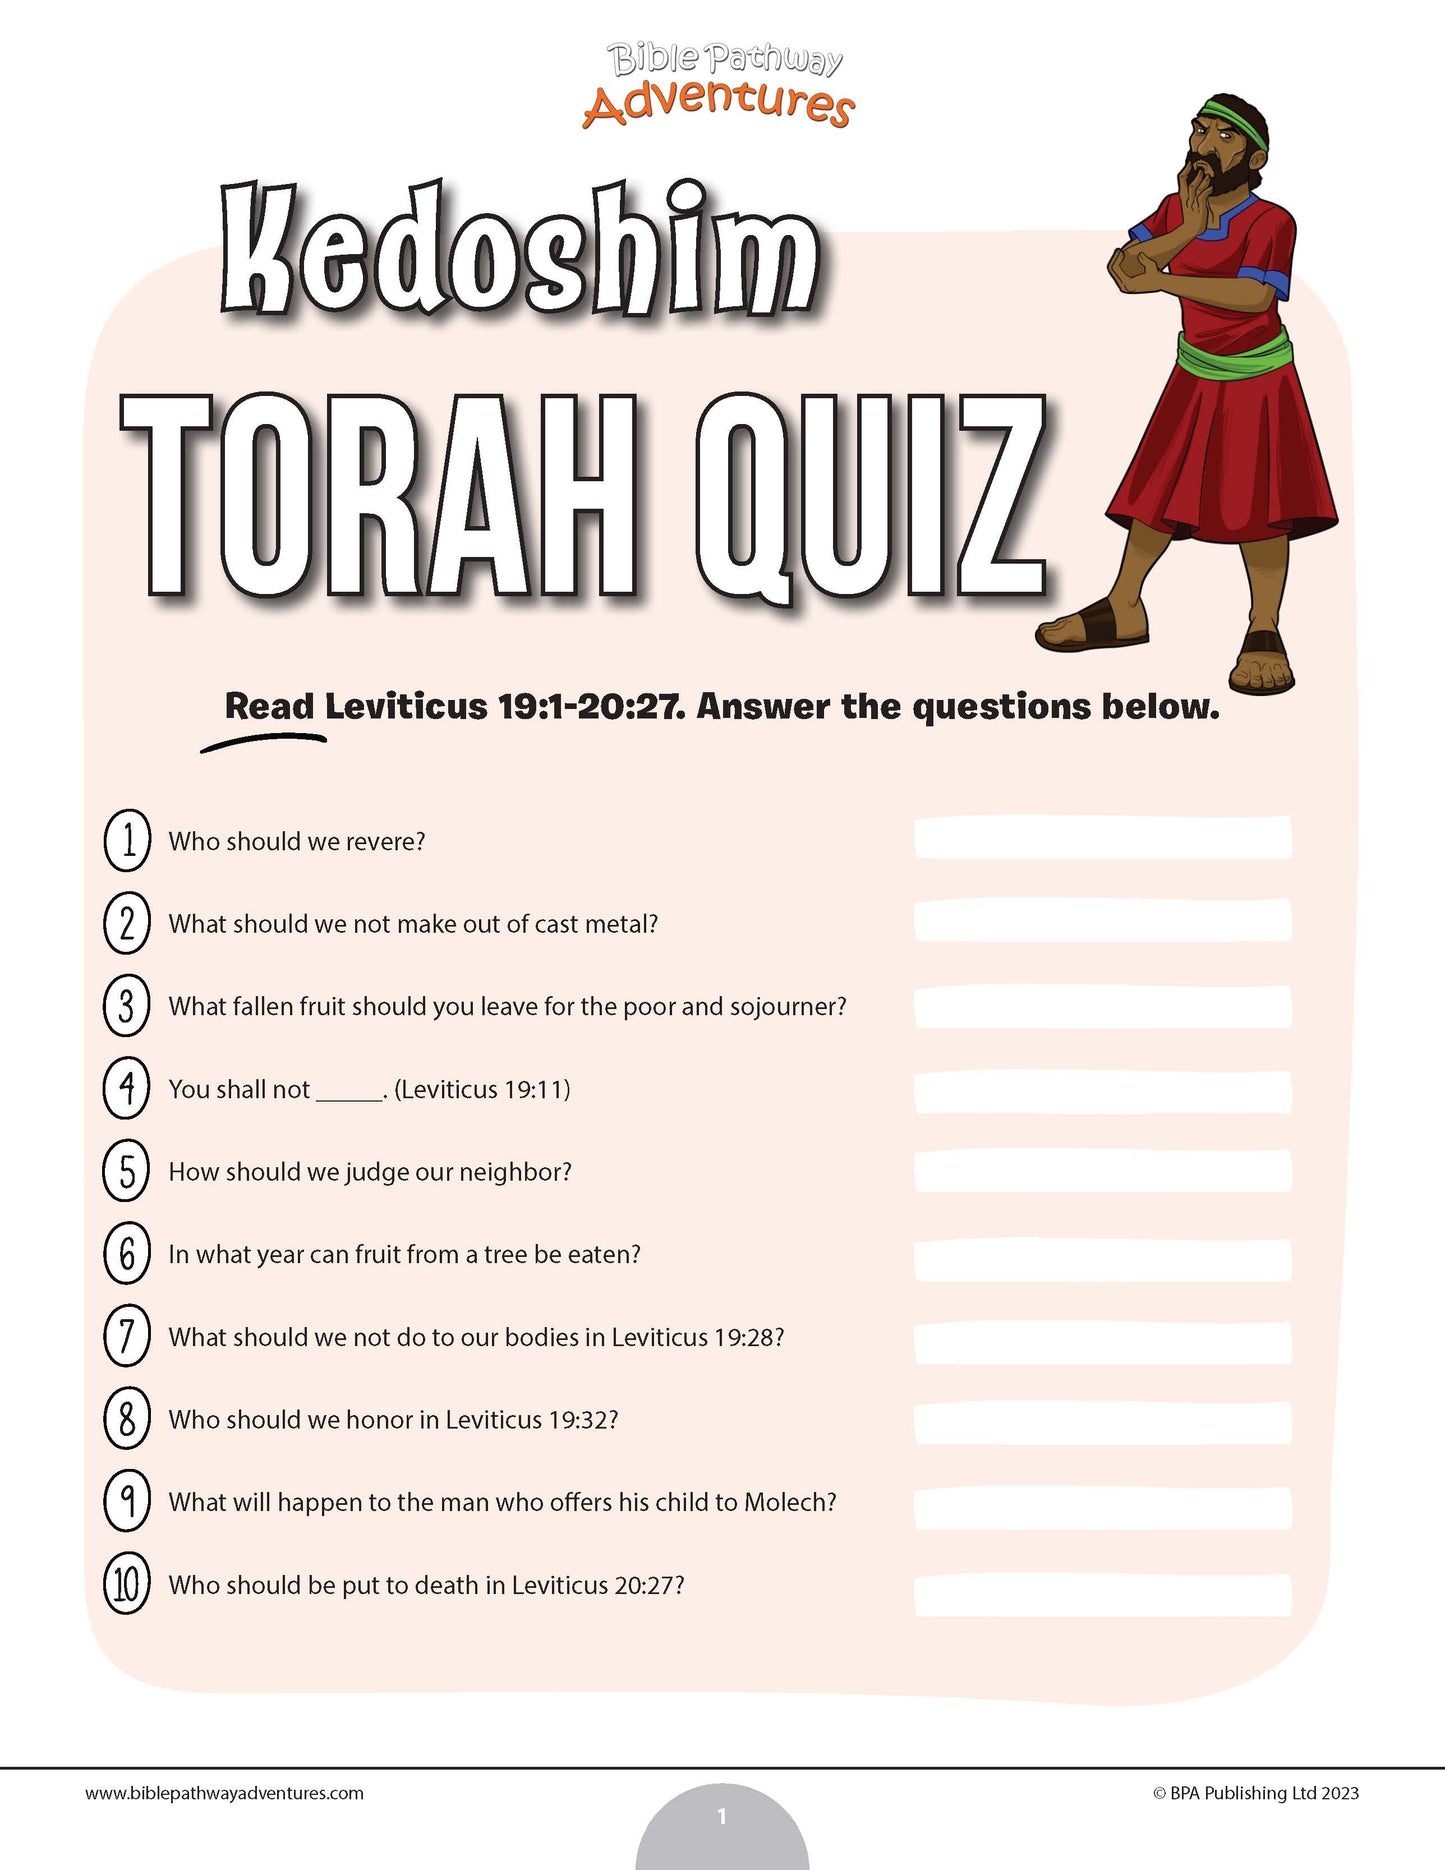 Kedoshim Torah quiz (PDF)